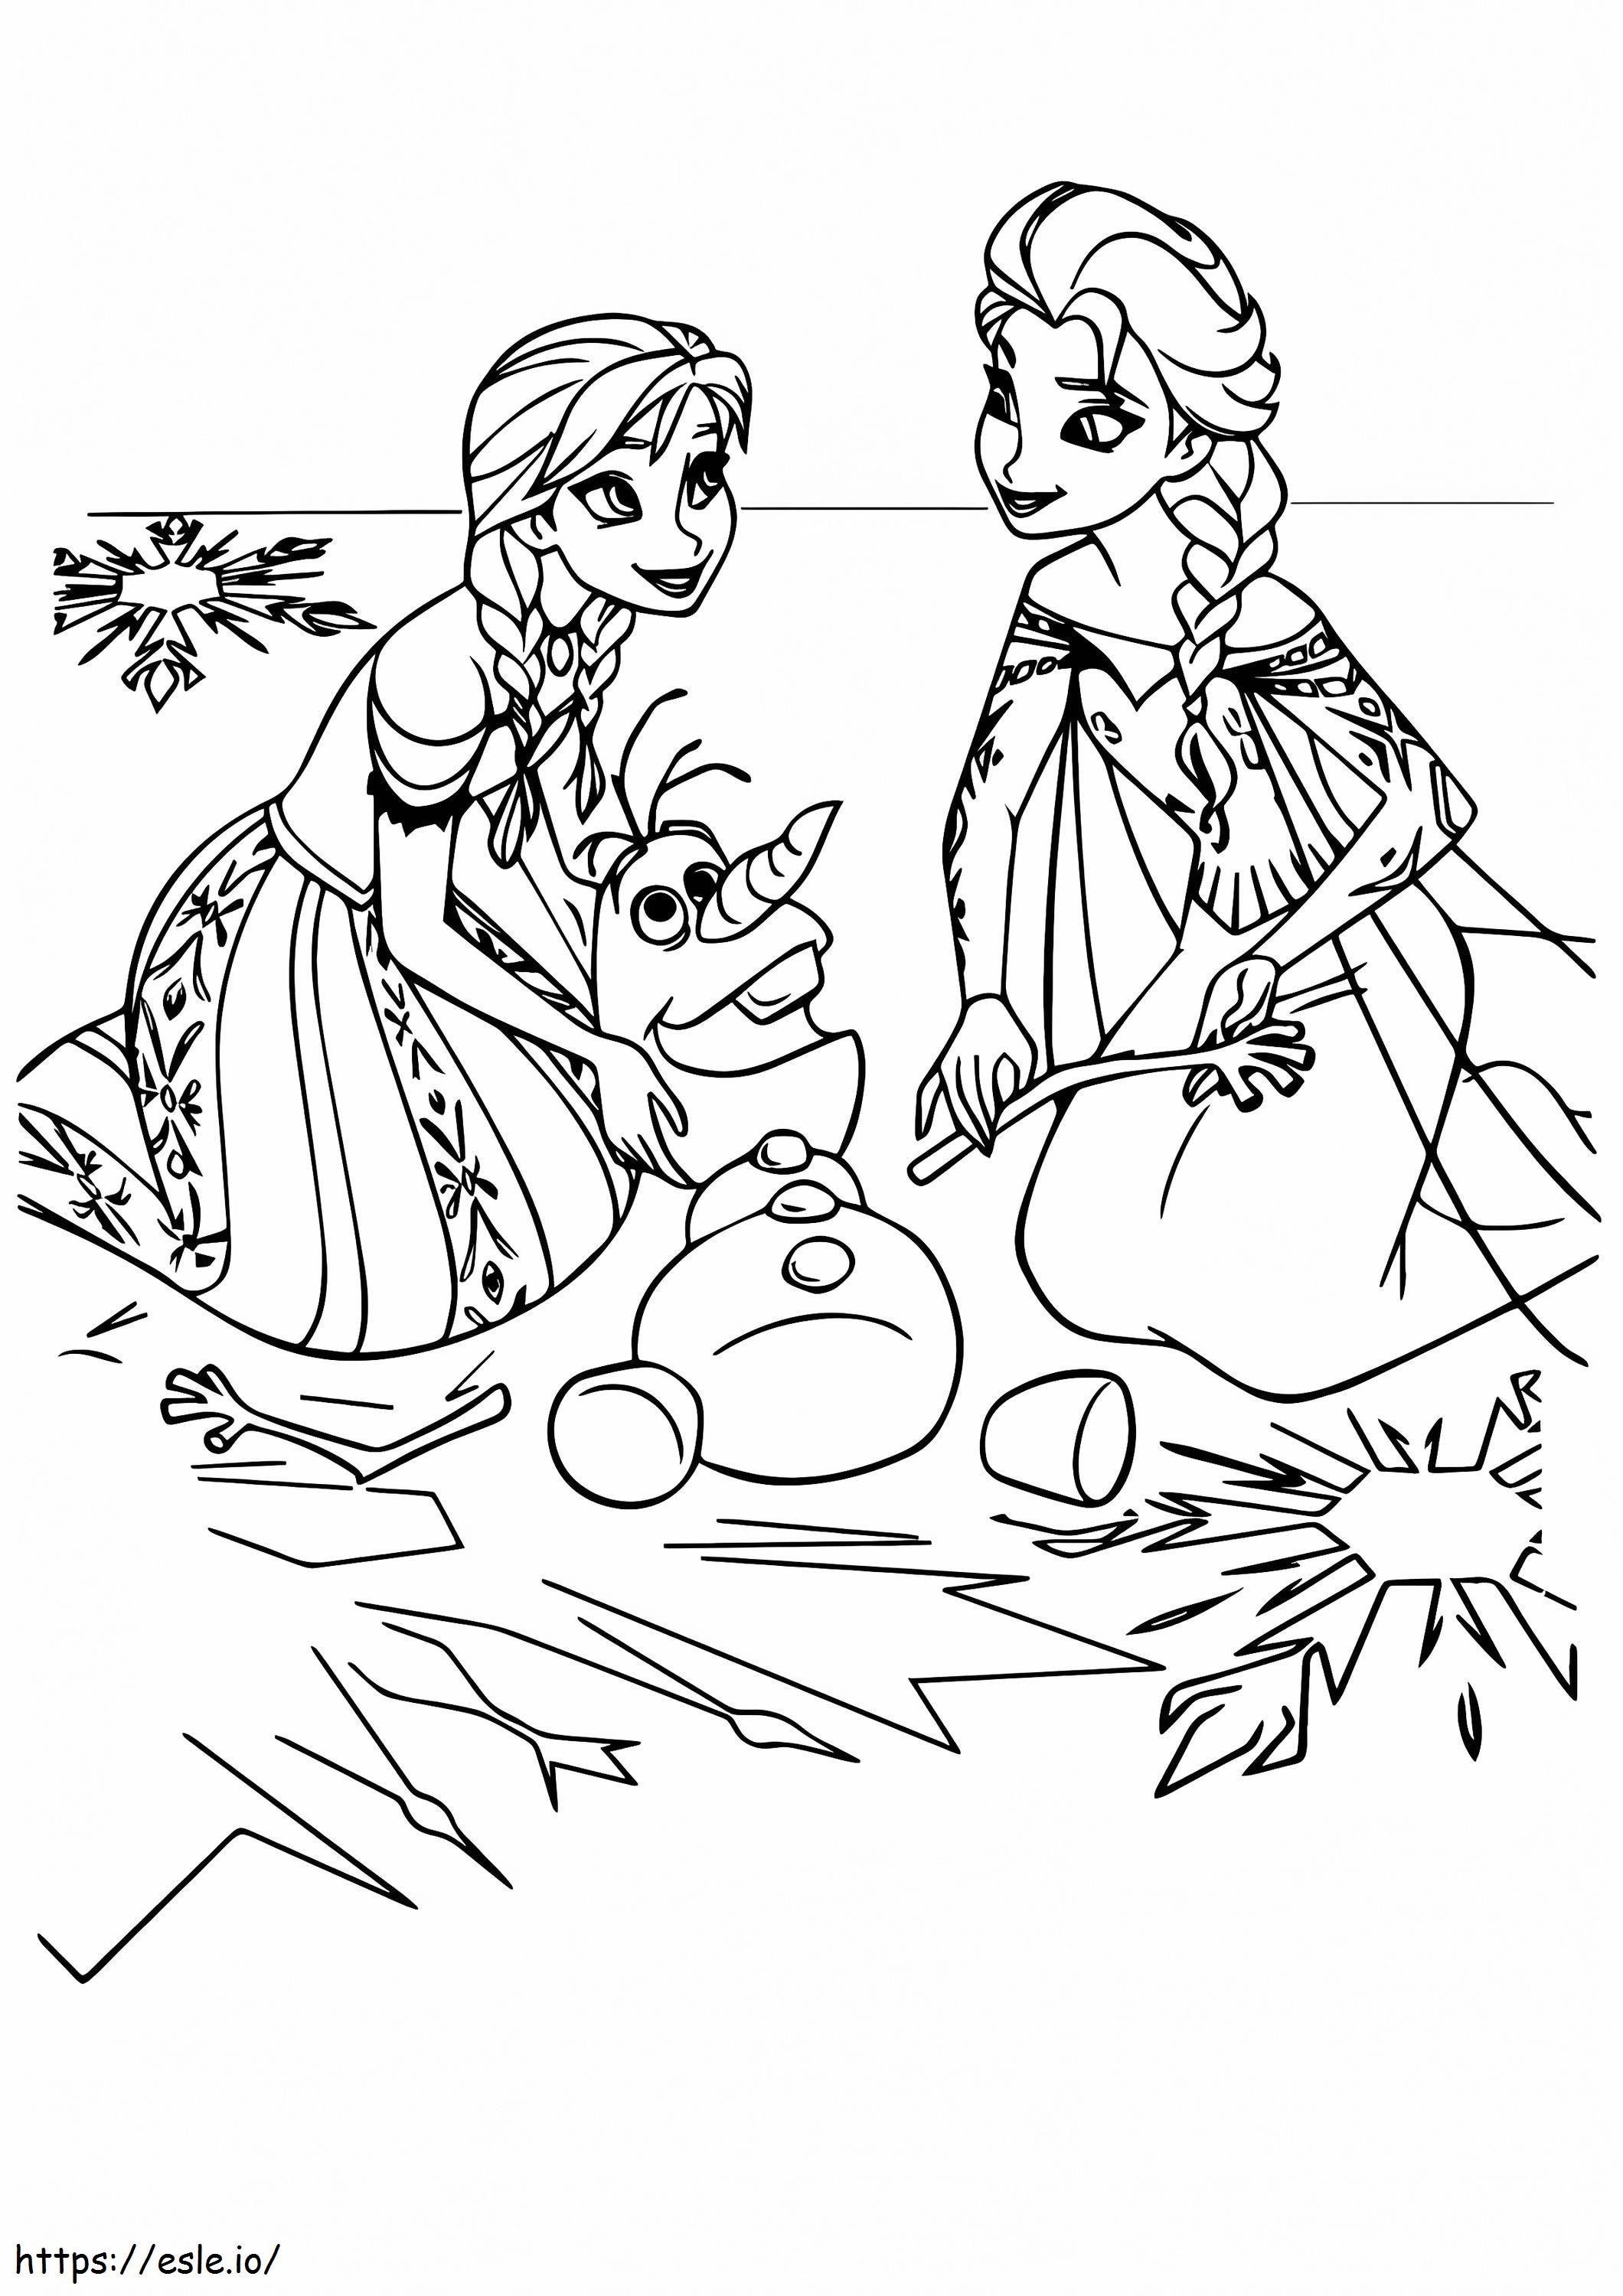 Anna és Elsa Olaffal kifestő